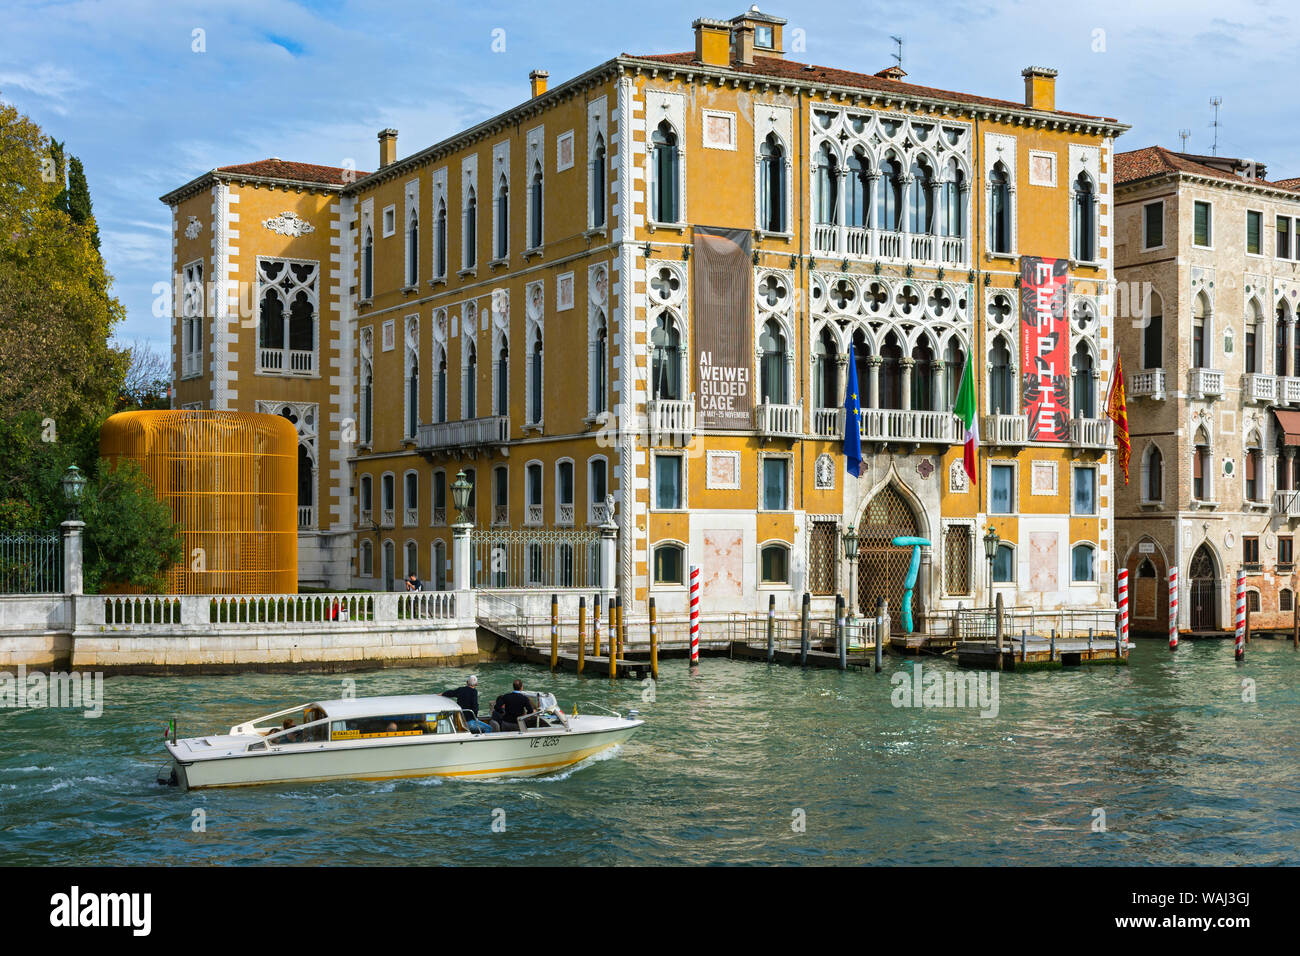 Le Palazzo Cavalli Franchetti sur le Grand Canal, du Ponte dell'Accademia Bridge, Venise, Italie. Cage dorée sculpture par Ai Weiwei à gauche Banque D'Images